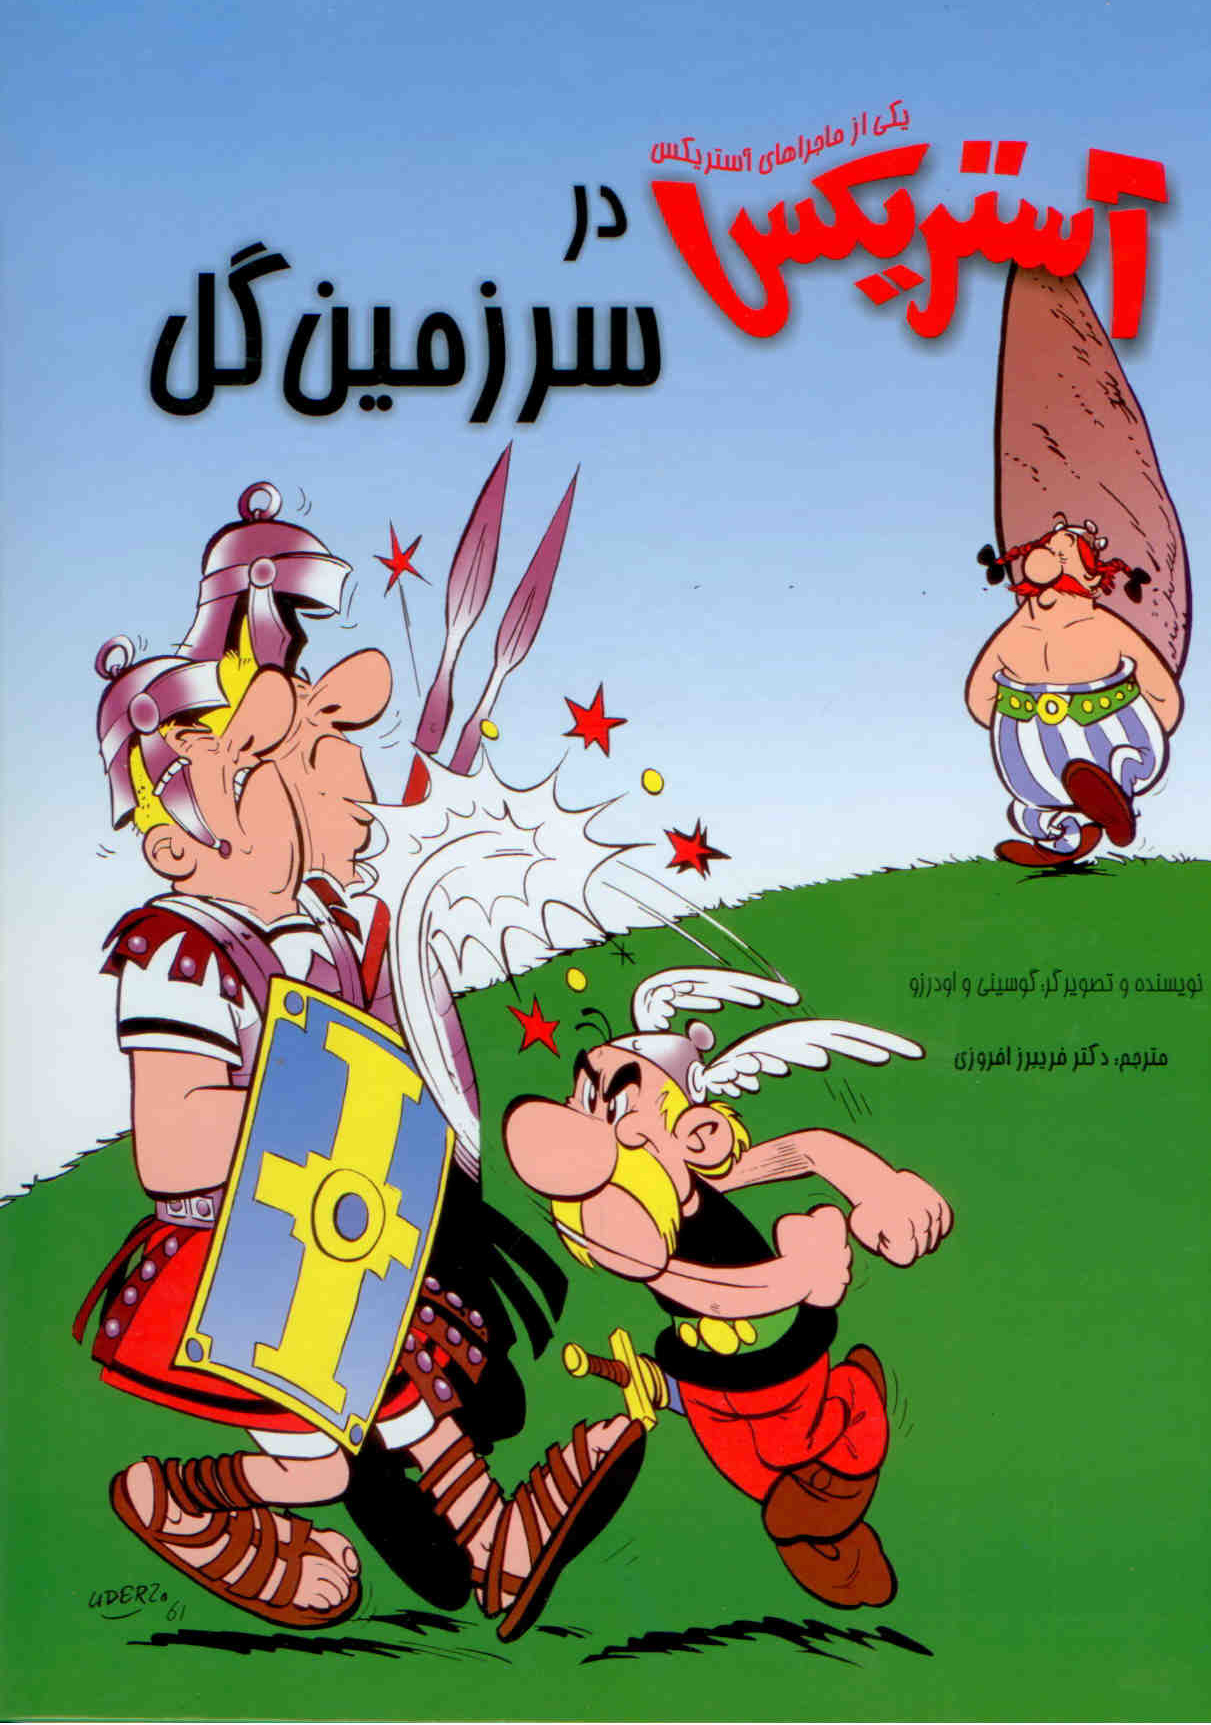 آستريكس در سرزمين گل / Asterix at the Land of Flowers [1] (2012)